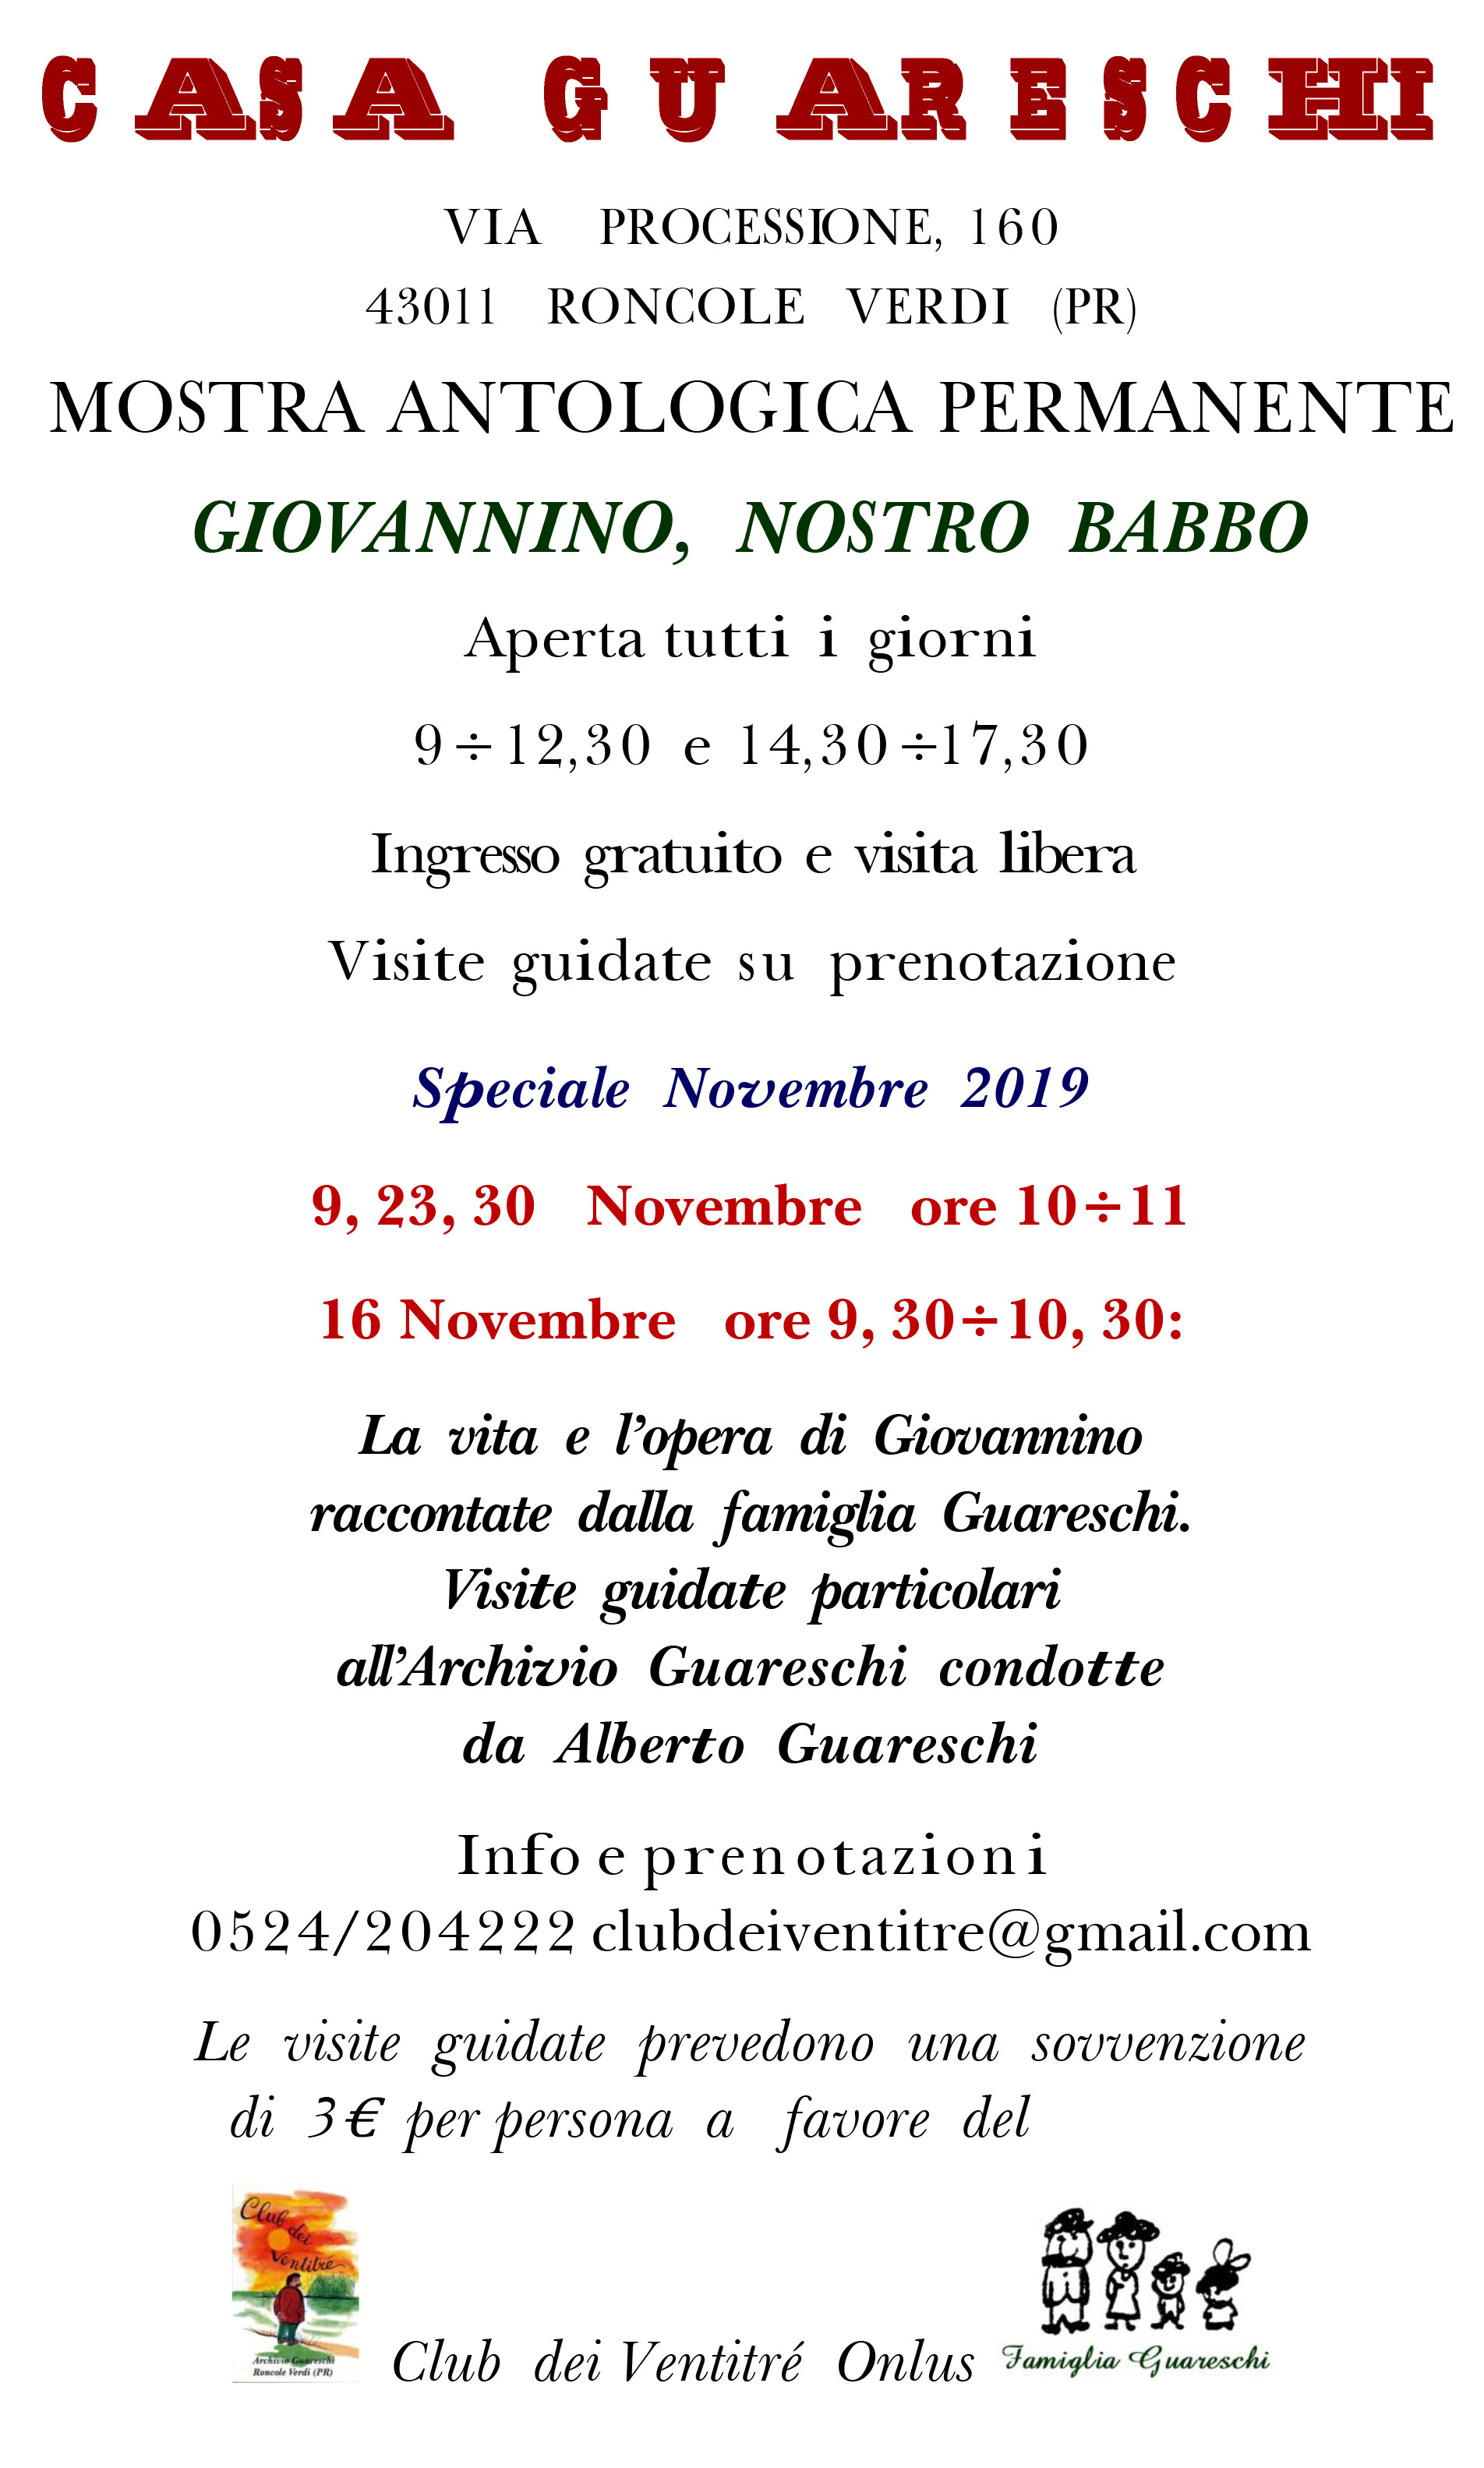 «Vita e opera di Giovannino raccontate dalla famiglia Guareschi»con visite guidate all'Archivio Guareschi condotte da Alberto Guareschi